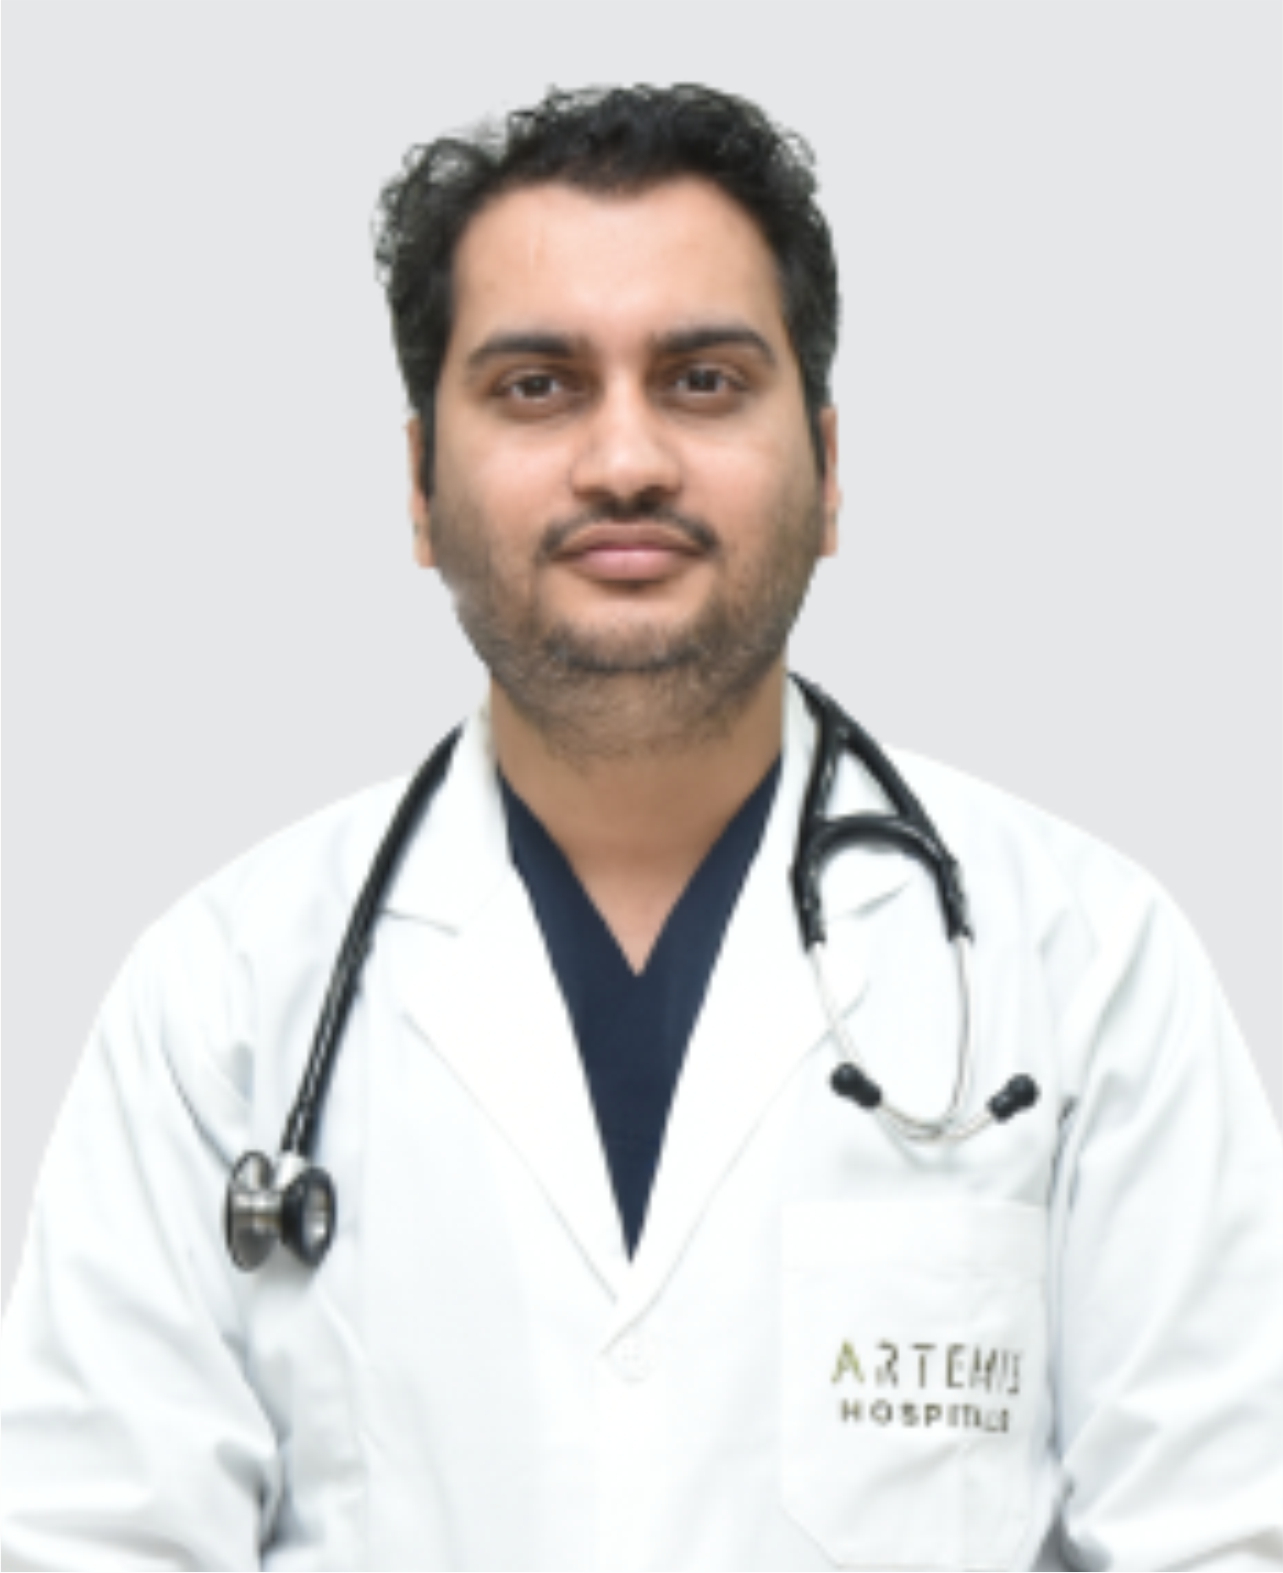 Dr. Ashutosh Yadav